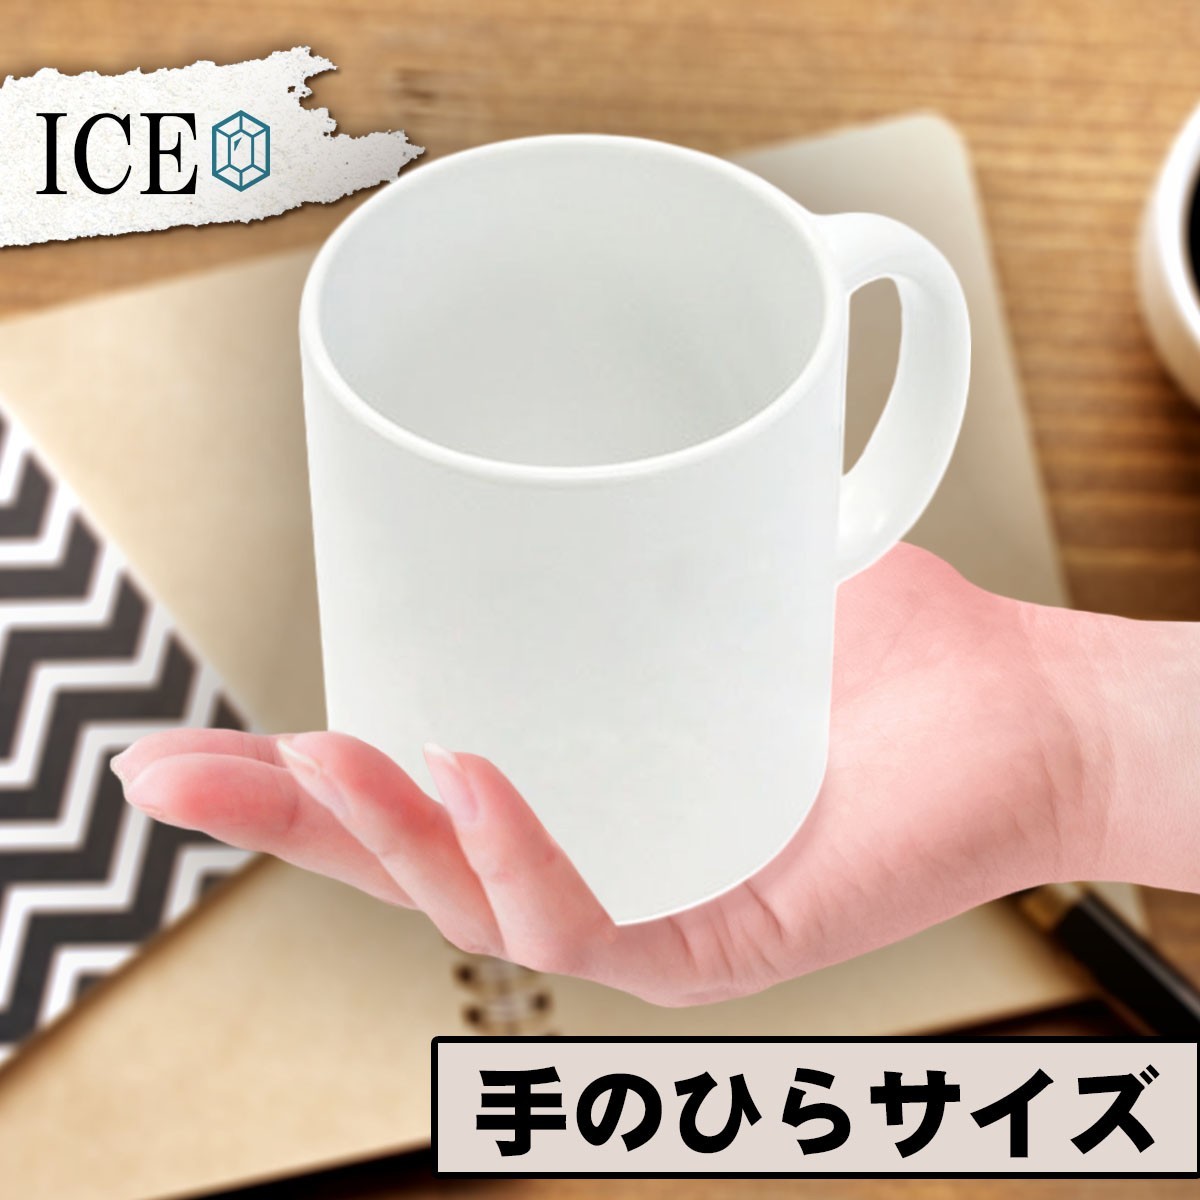 ヒヨコ メッセージカード おもしろ マグカップ コップ 陶器 可愛い かわいい 白 シンプル かわいい カッコイイ シュール 面白い ジョーク_画像2